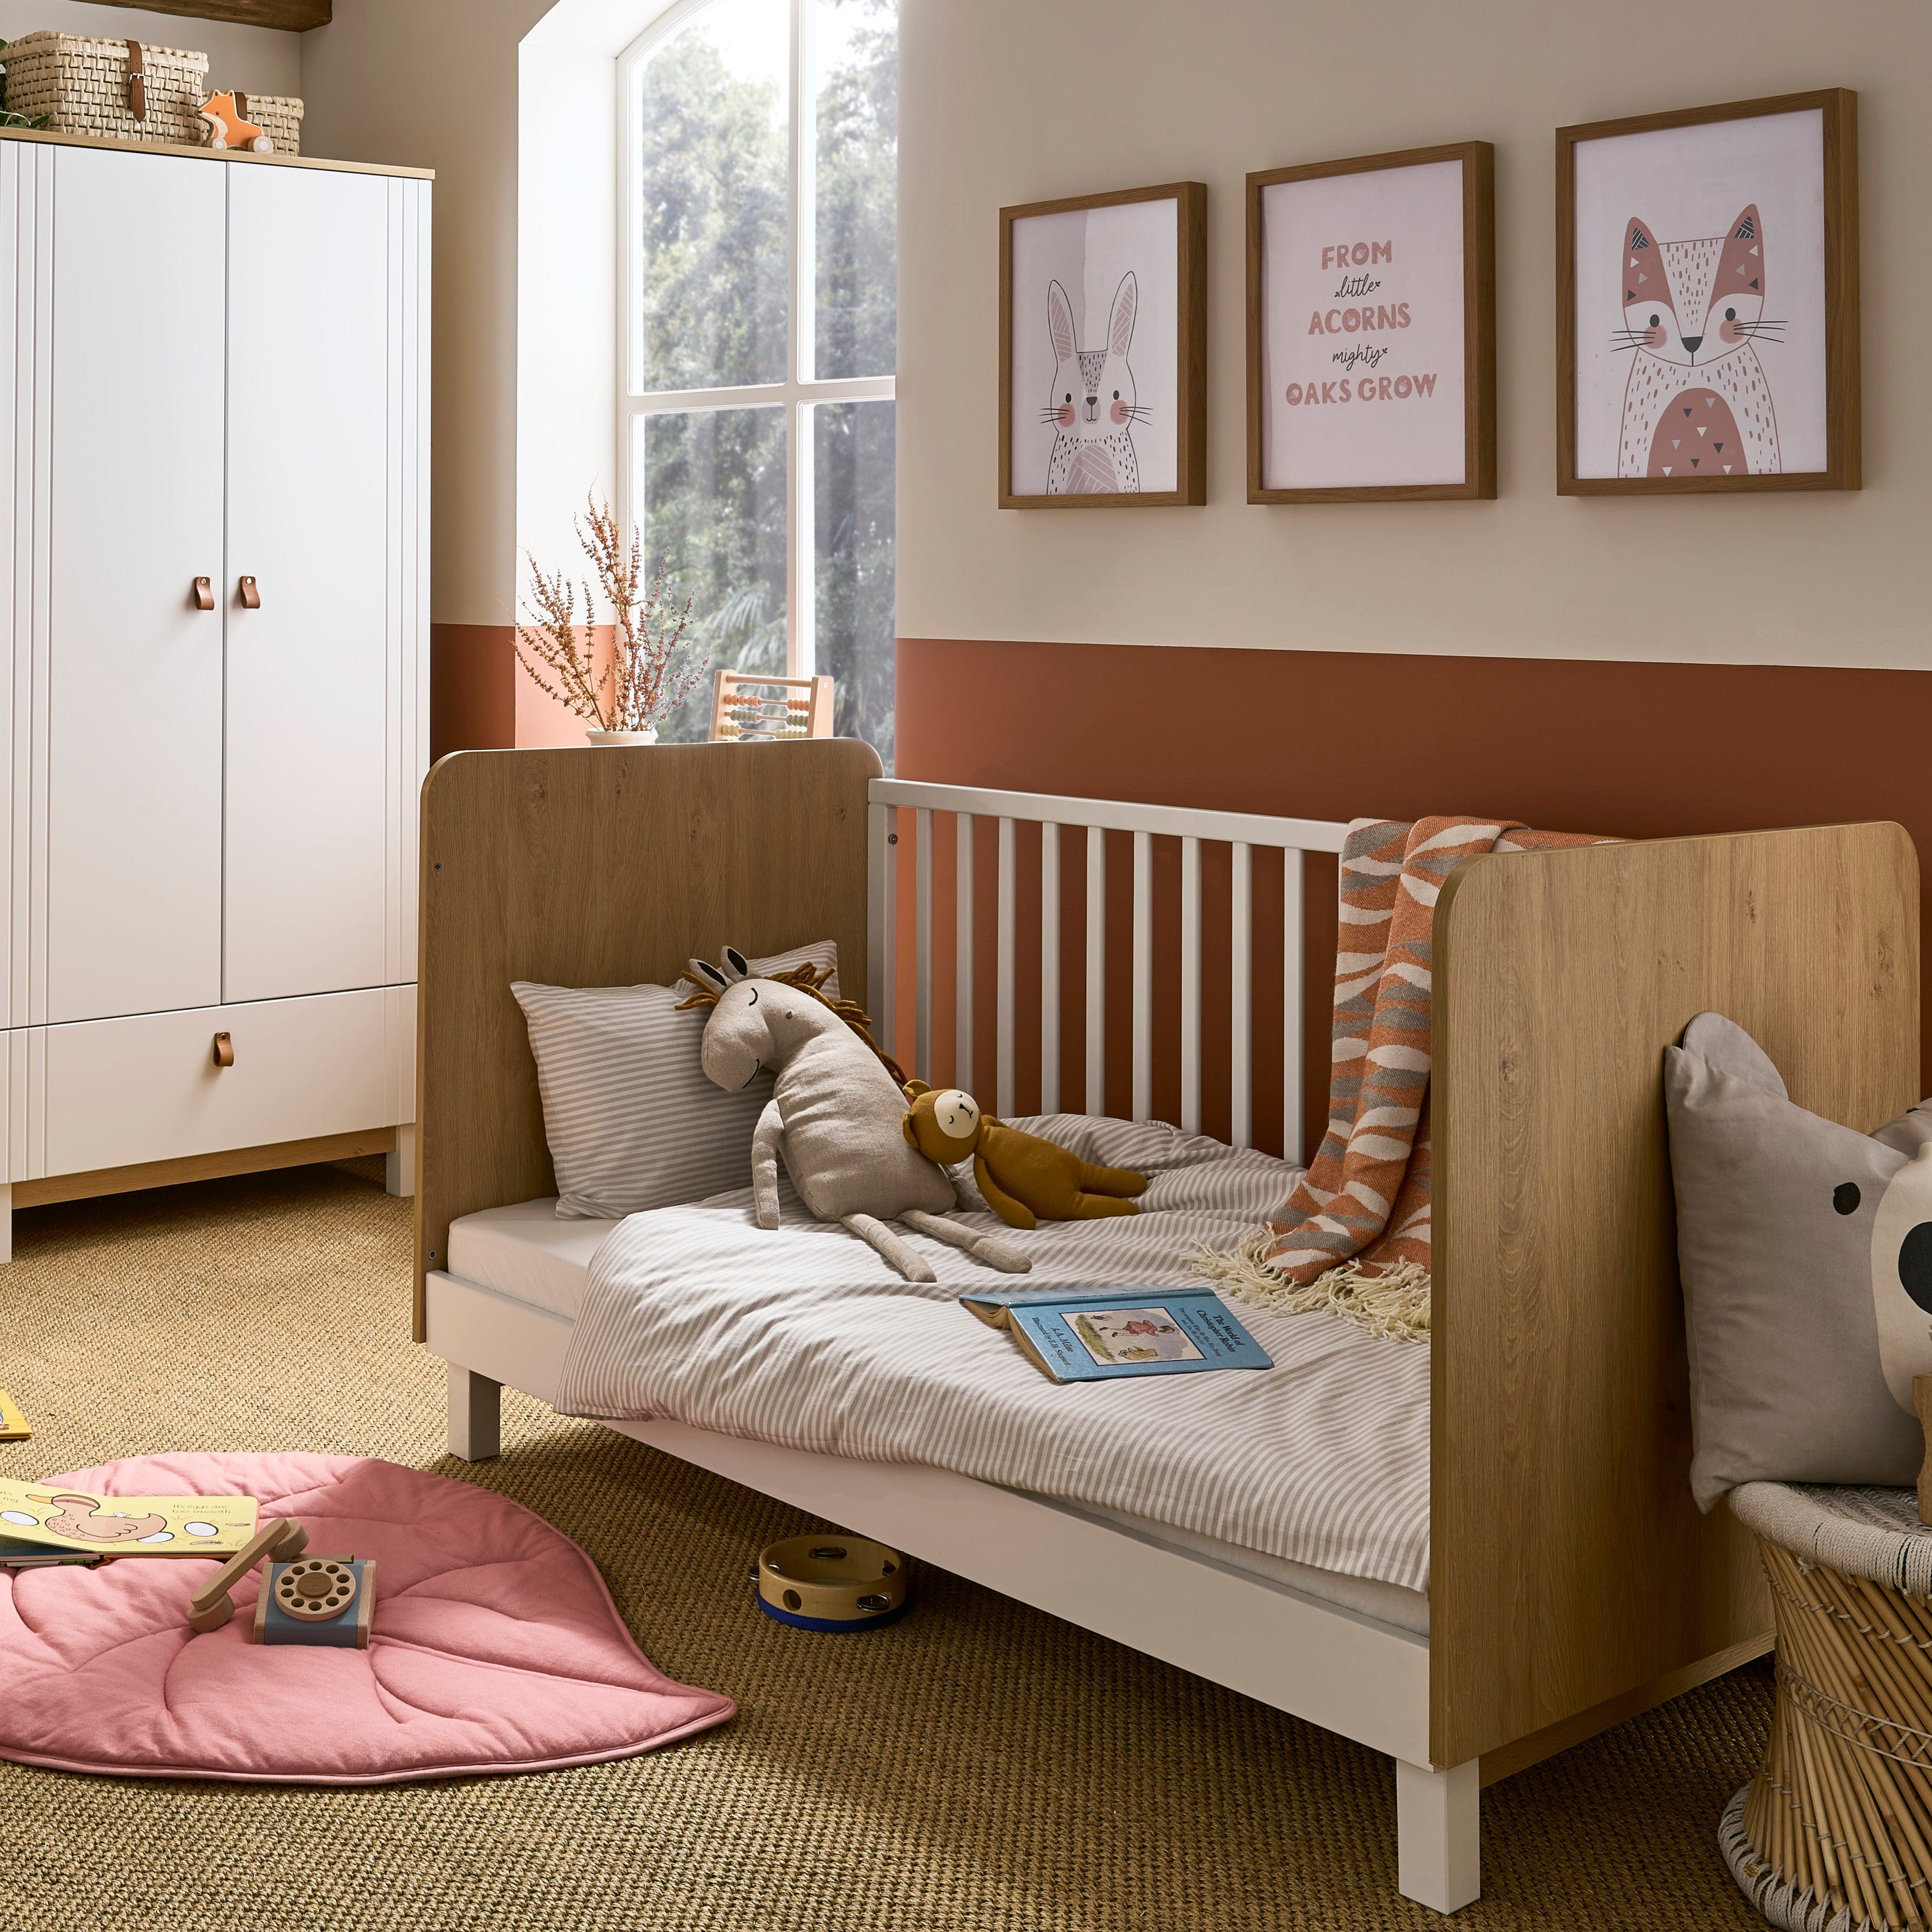 CuddleCo Rafi 4 Piece Room Set in Oak & White Nursery Room Sets